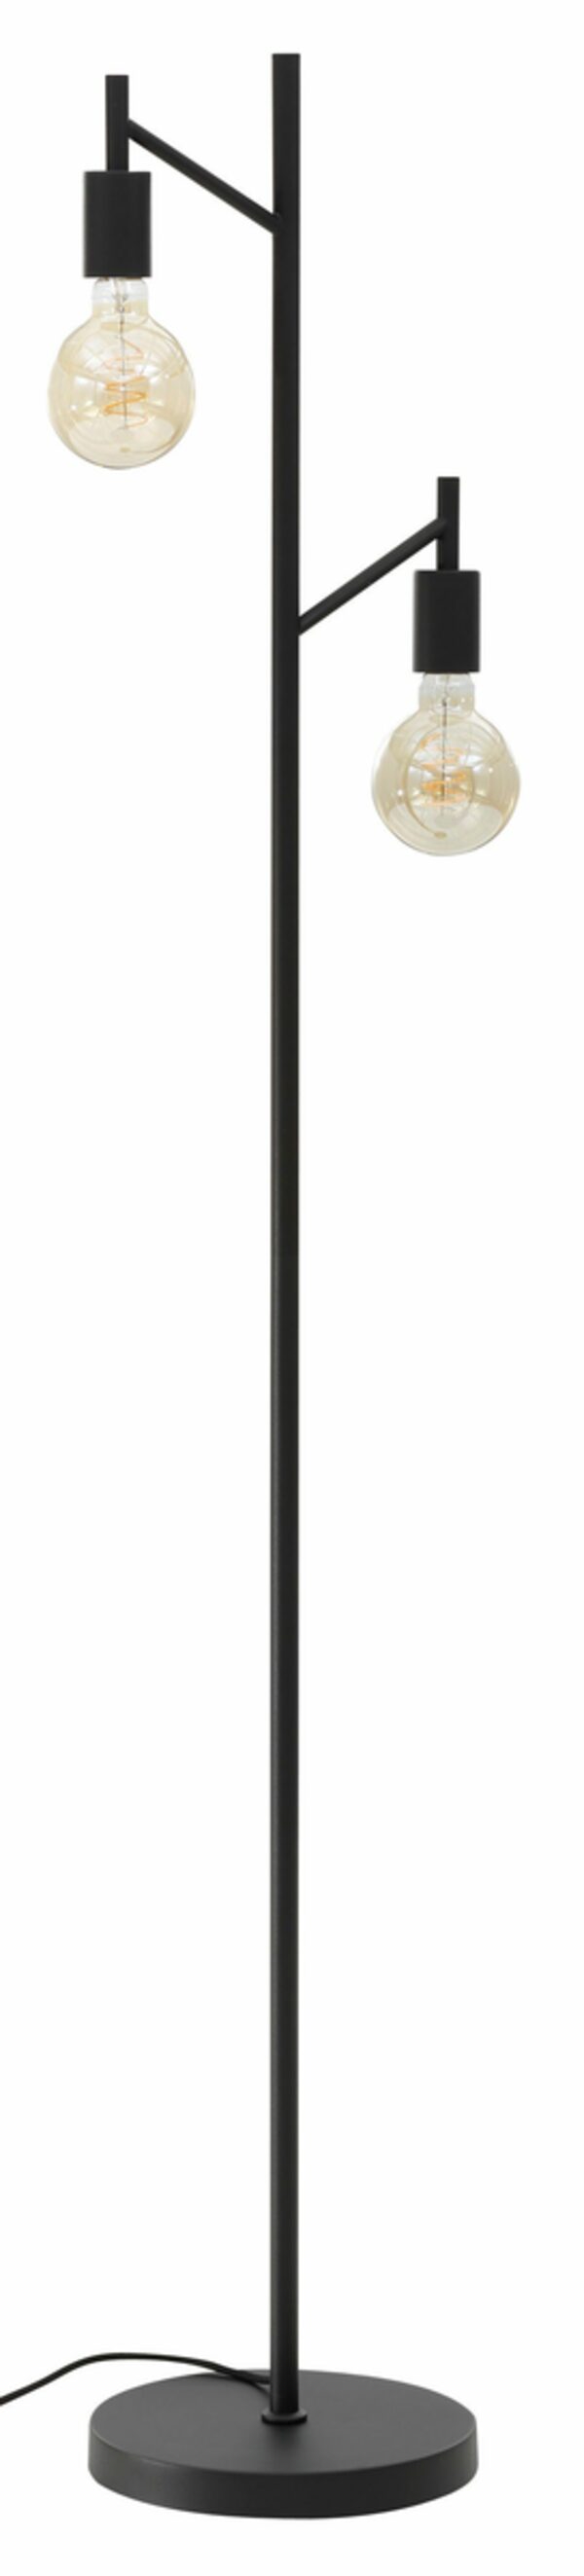 Bild 1 von Leonique Stehlampe Jarla, ohne Leuchtmittel, moderne, klassisch schwarze Stehleuchte, Höhe 155 cm